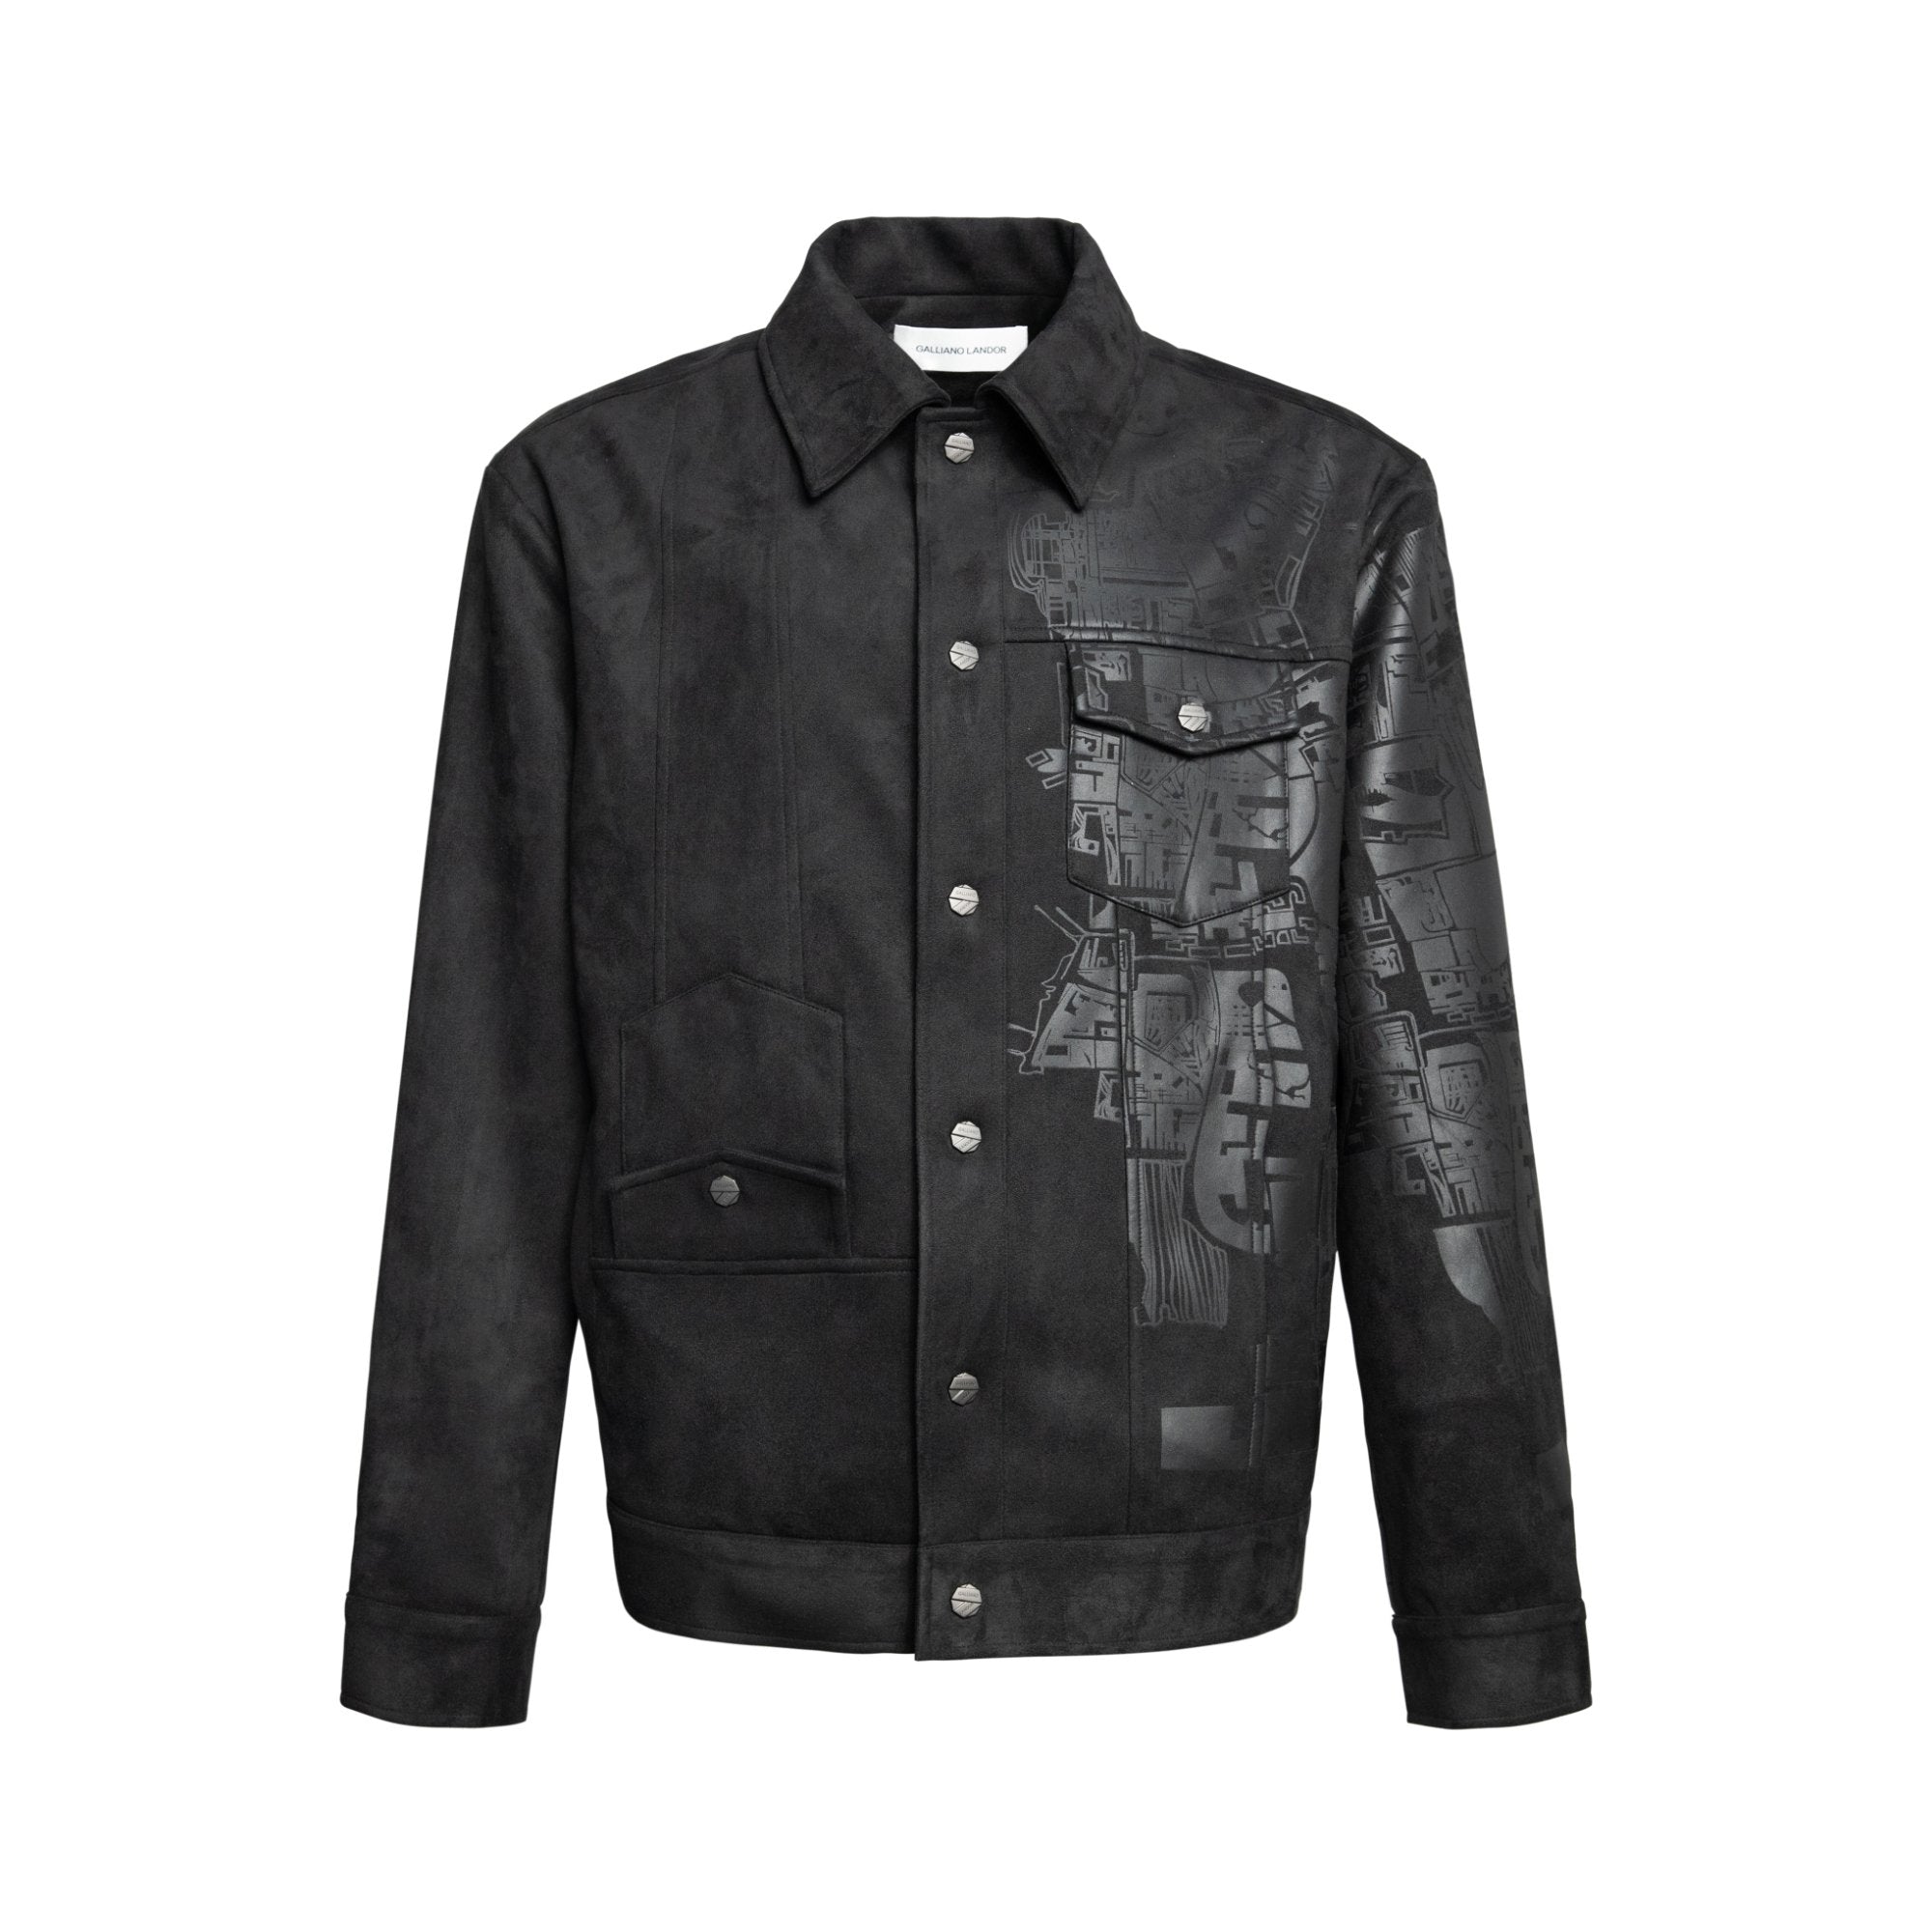 GALLIANO LANDOR Black Foil Embossed Printed Suede Jacket